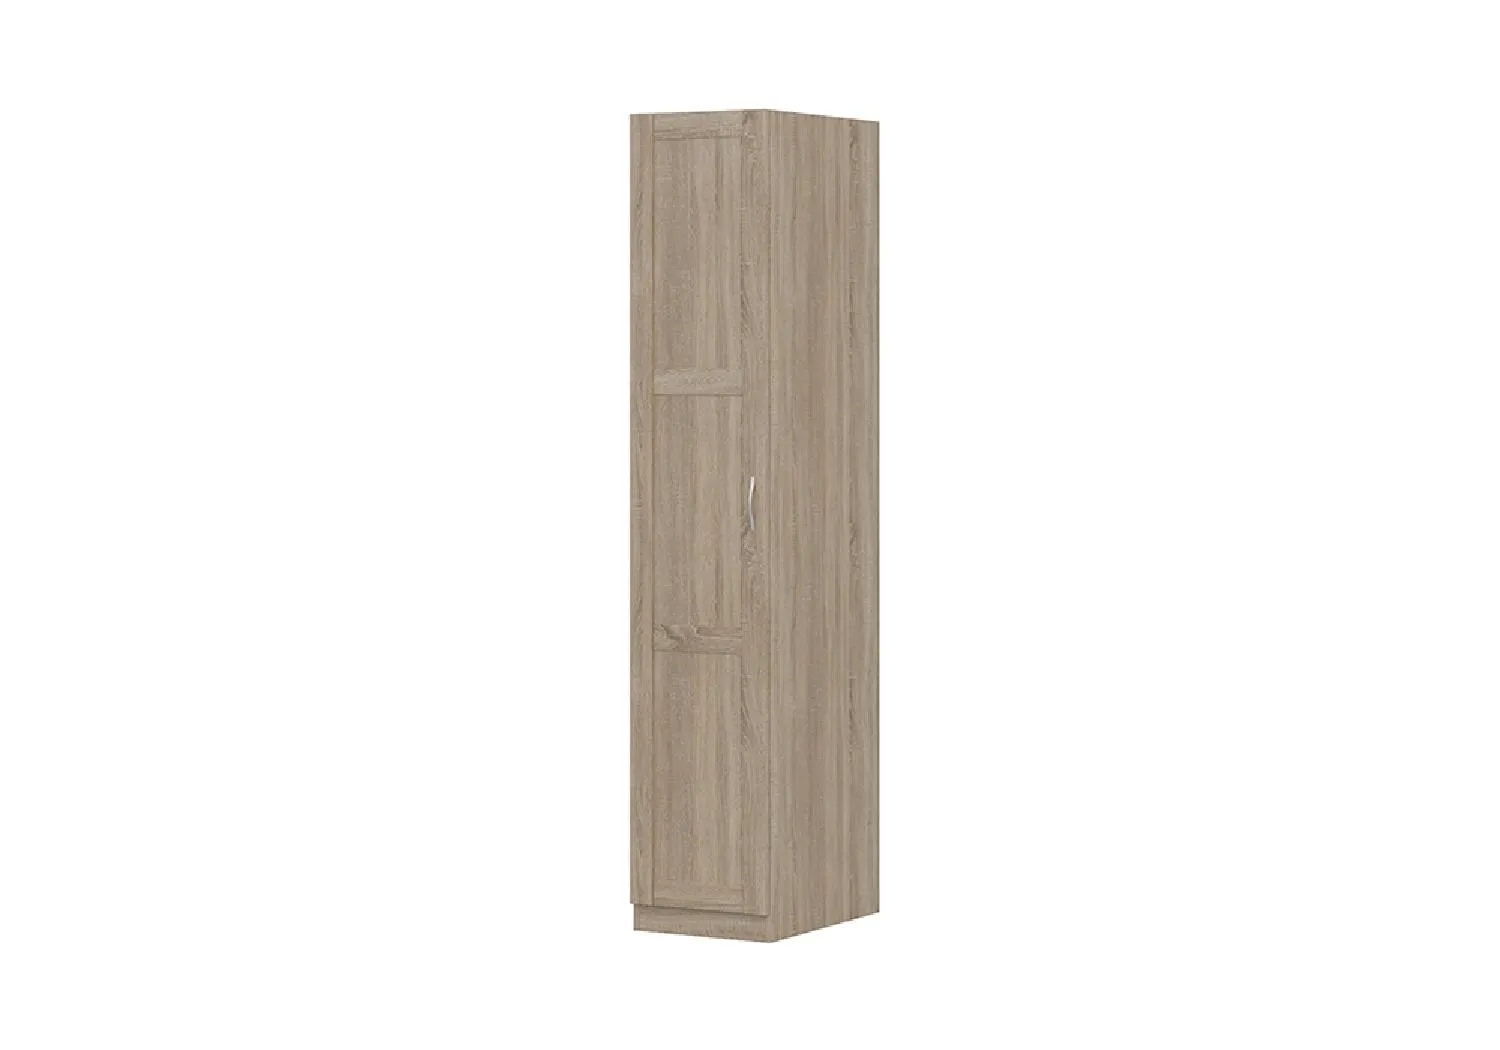 Пенал Пегас 1 дверь - аналог IKEA BRIMNES,39х58х202,сонома